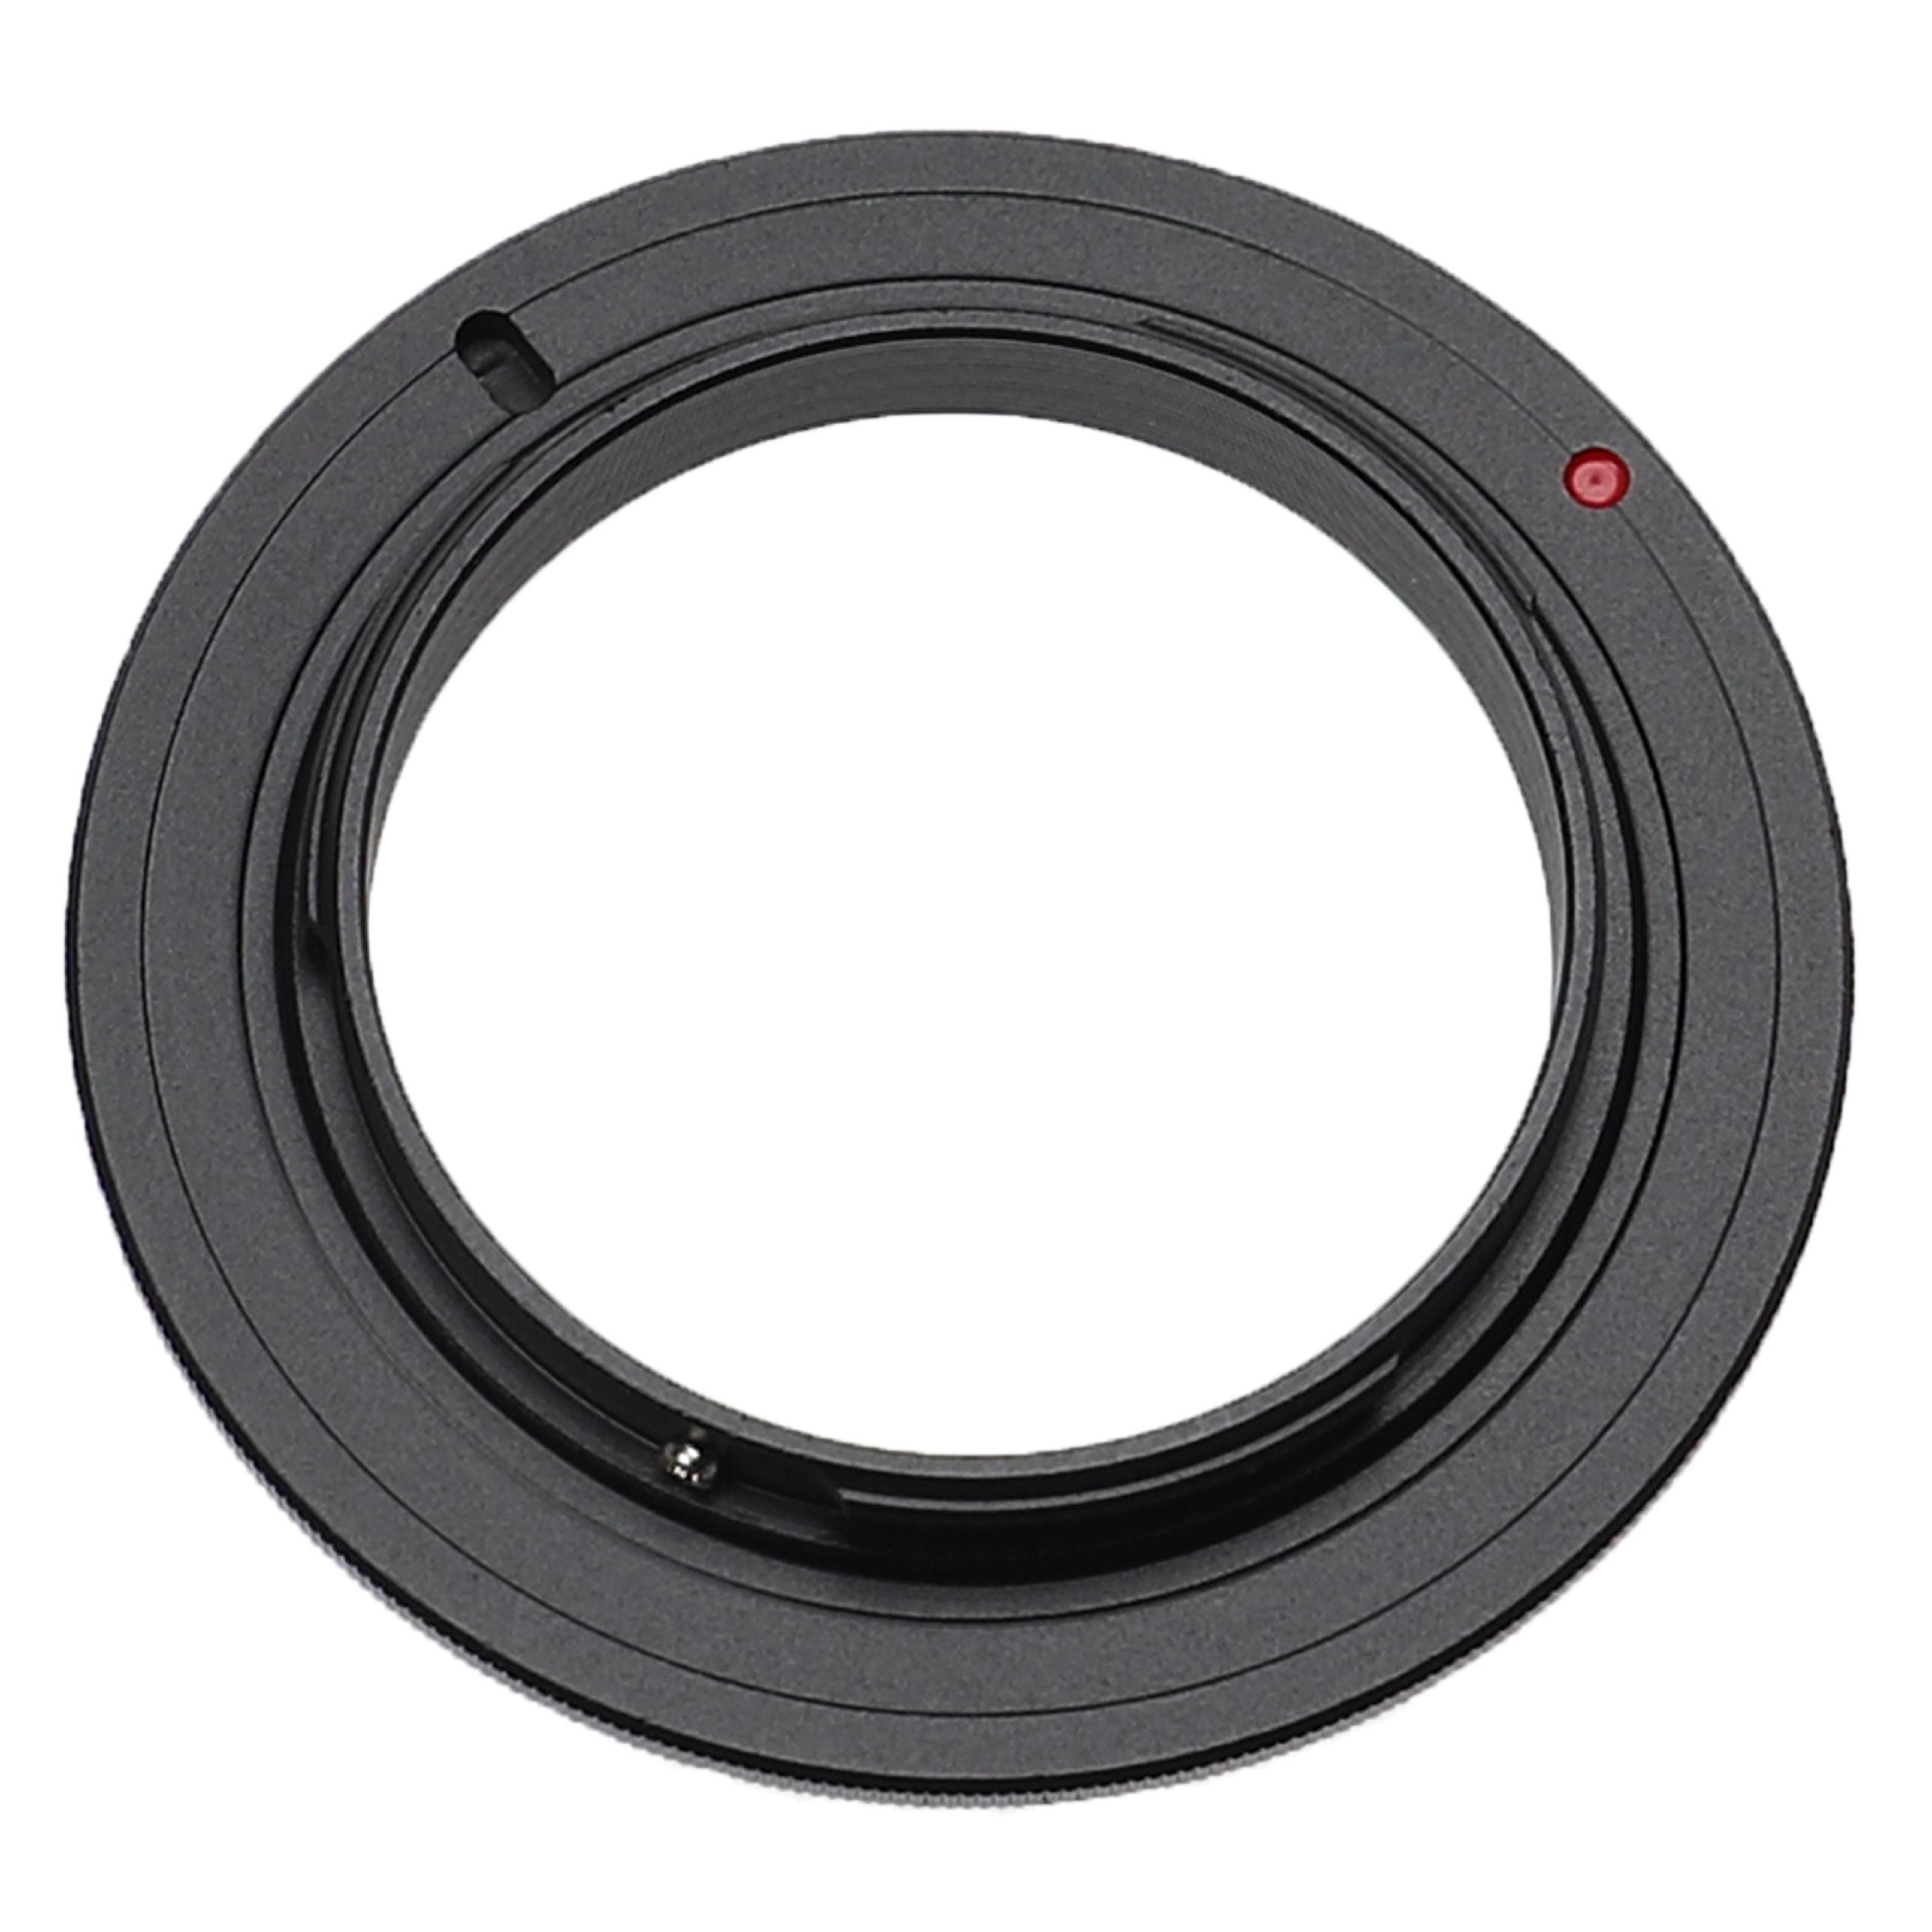 49 mm Retro Adapter suitable for DMC-G1 Panasonic, Olympus DMC-G1 Cameras & Lenses etc. - Retro Ring